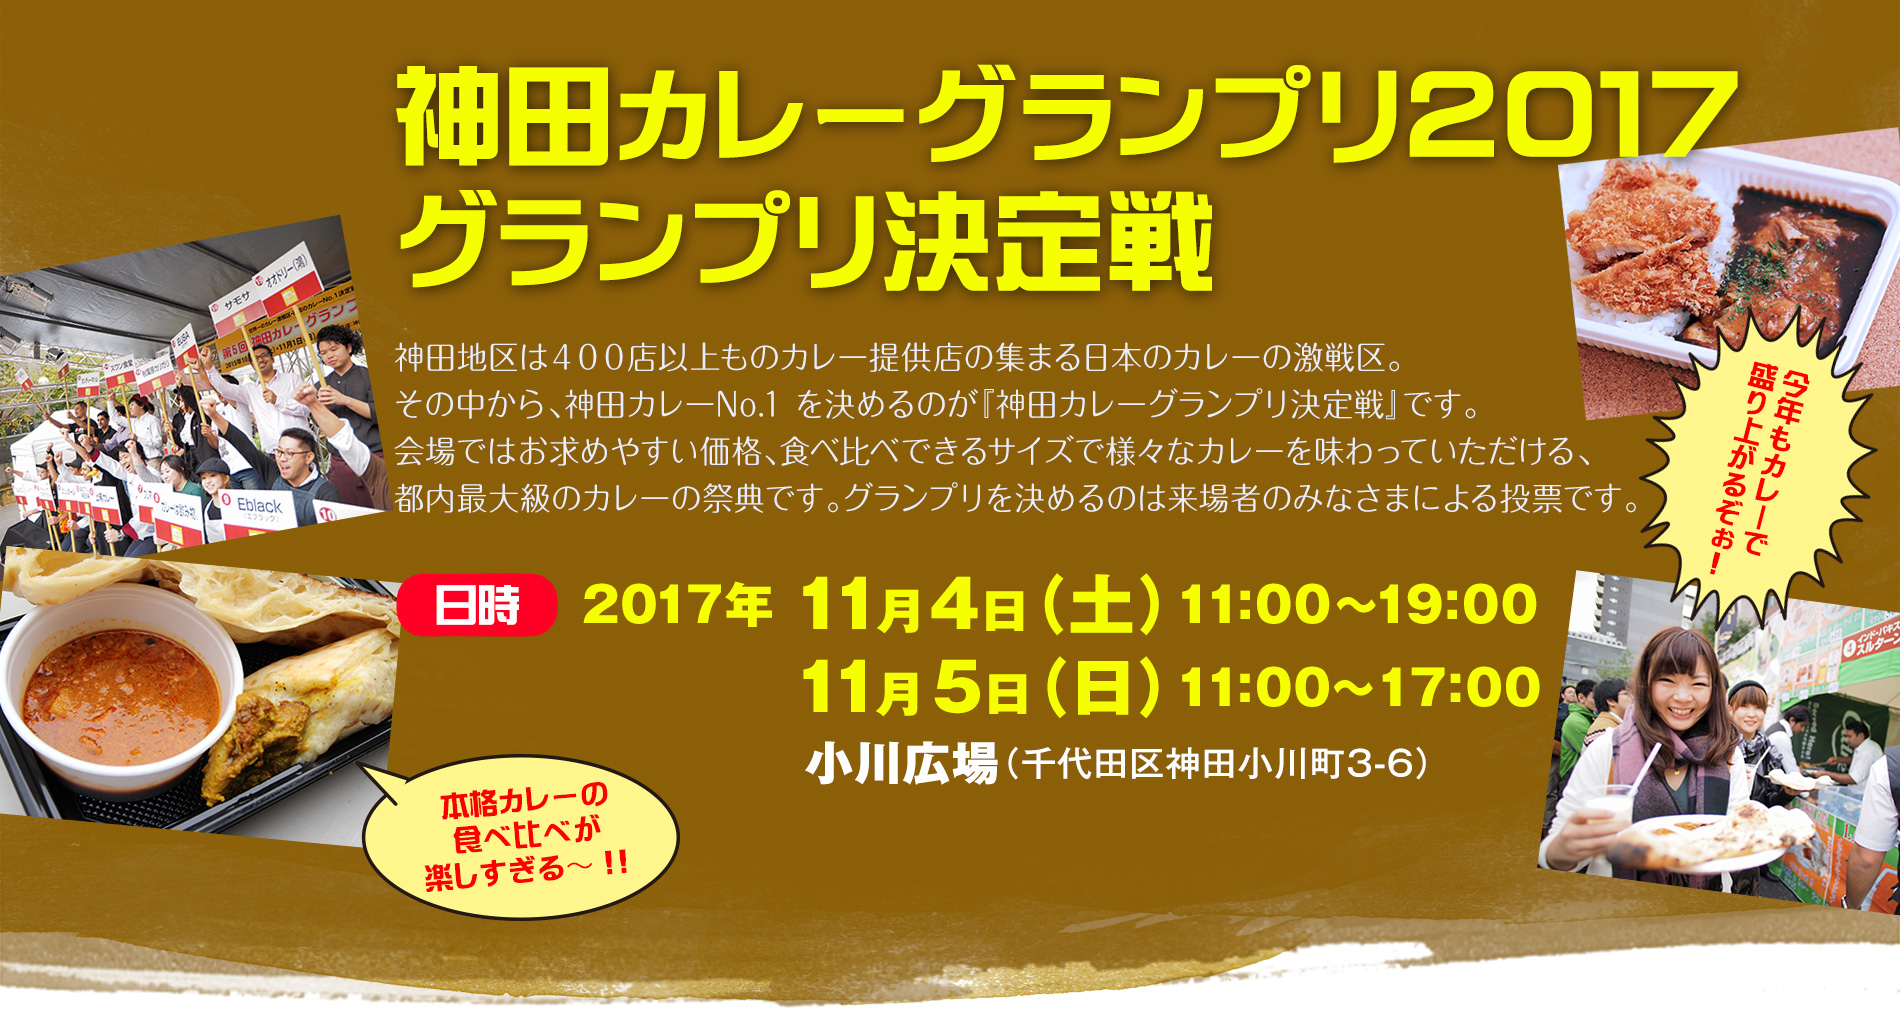 神田カレーグランプリ2017 開催決定